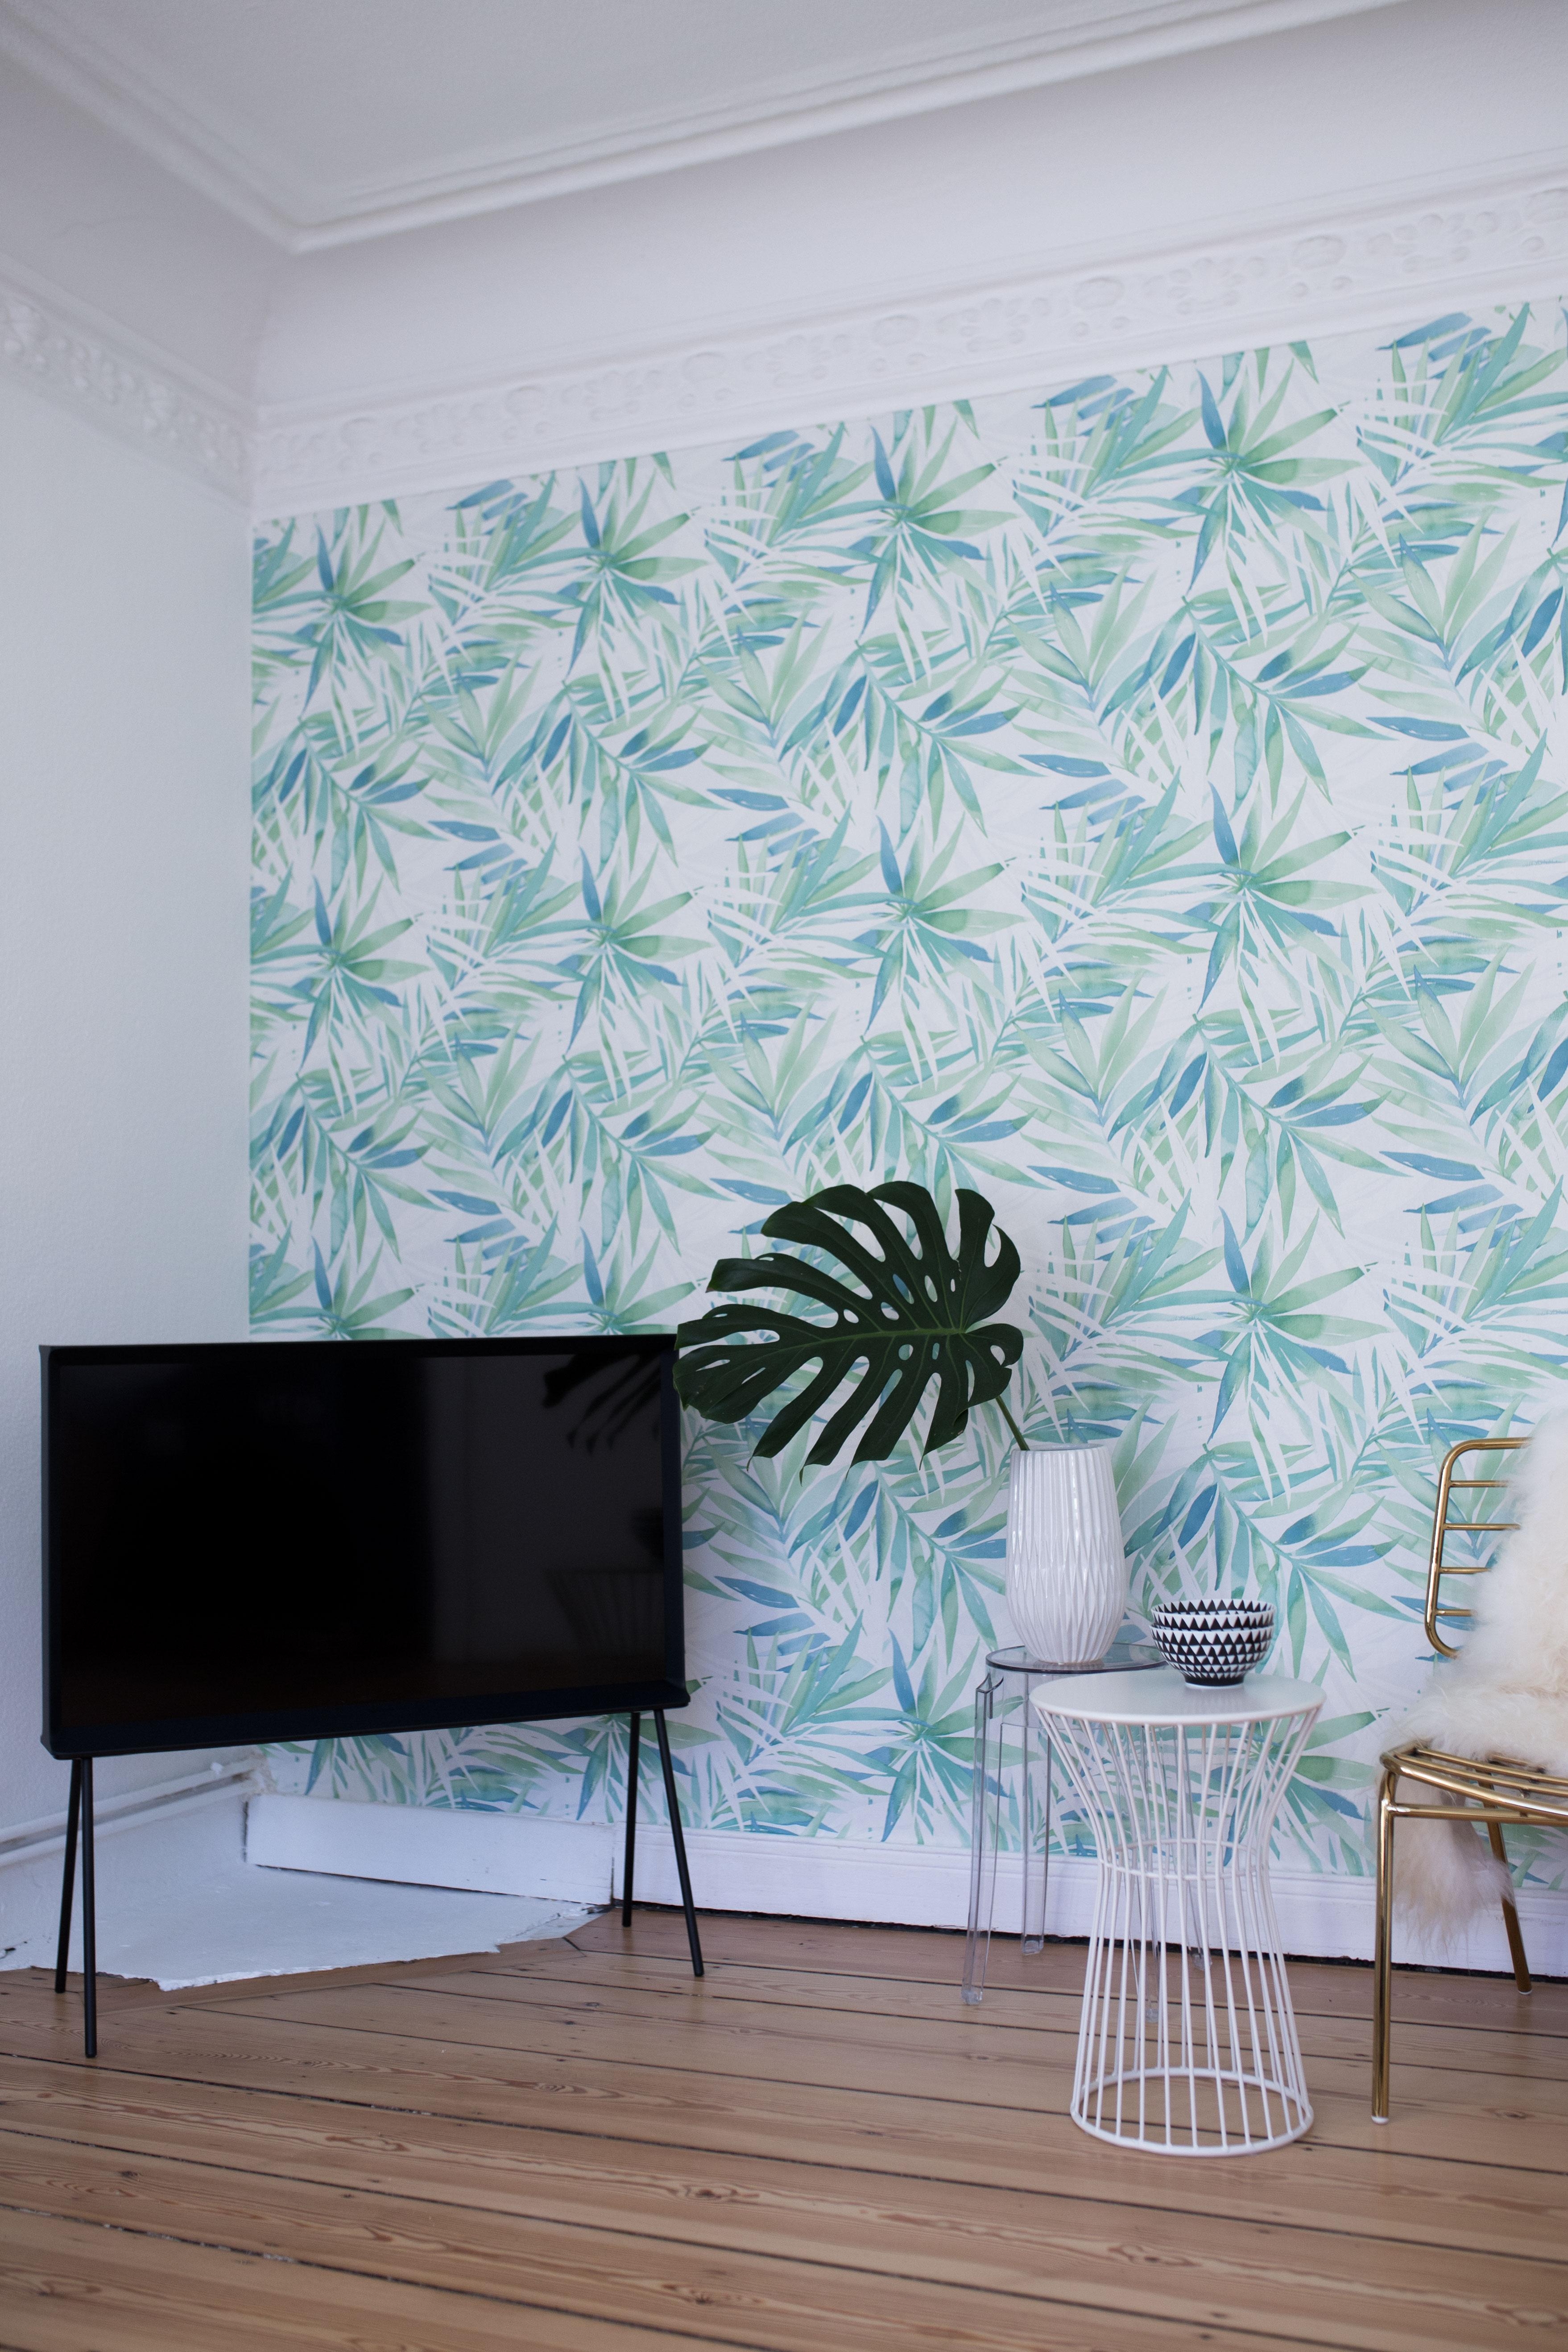 Palmen Tapete <3
#designdschungel #wallpaper #palmentapete #home 